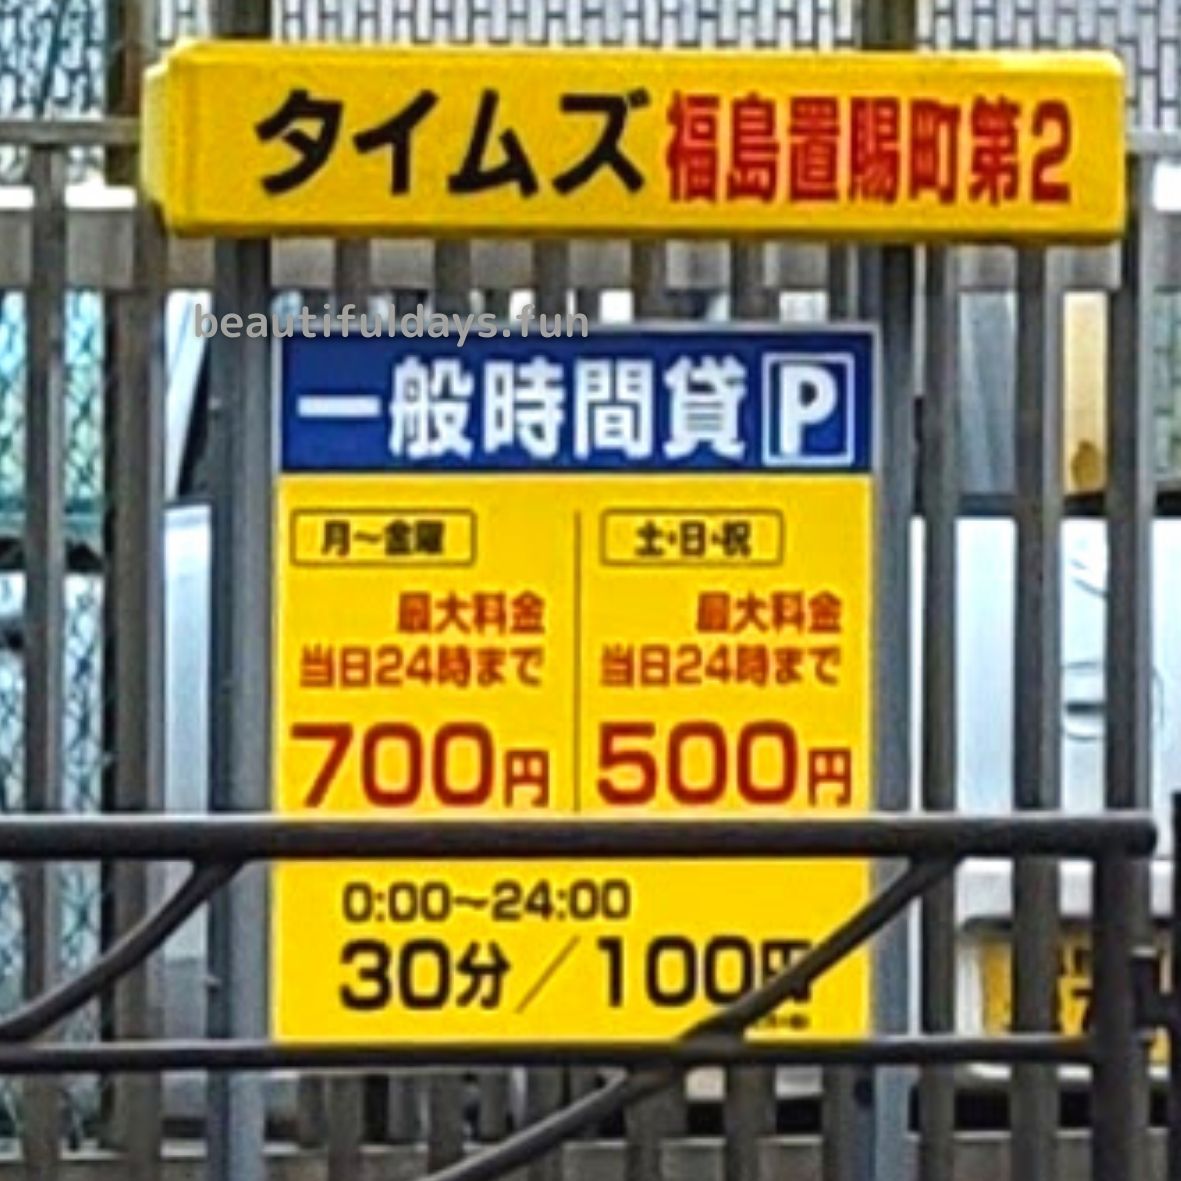 hukushima-parking22